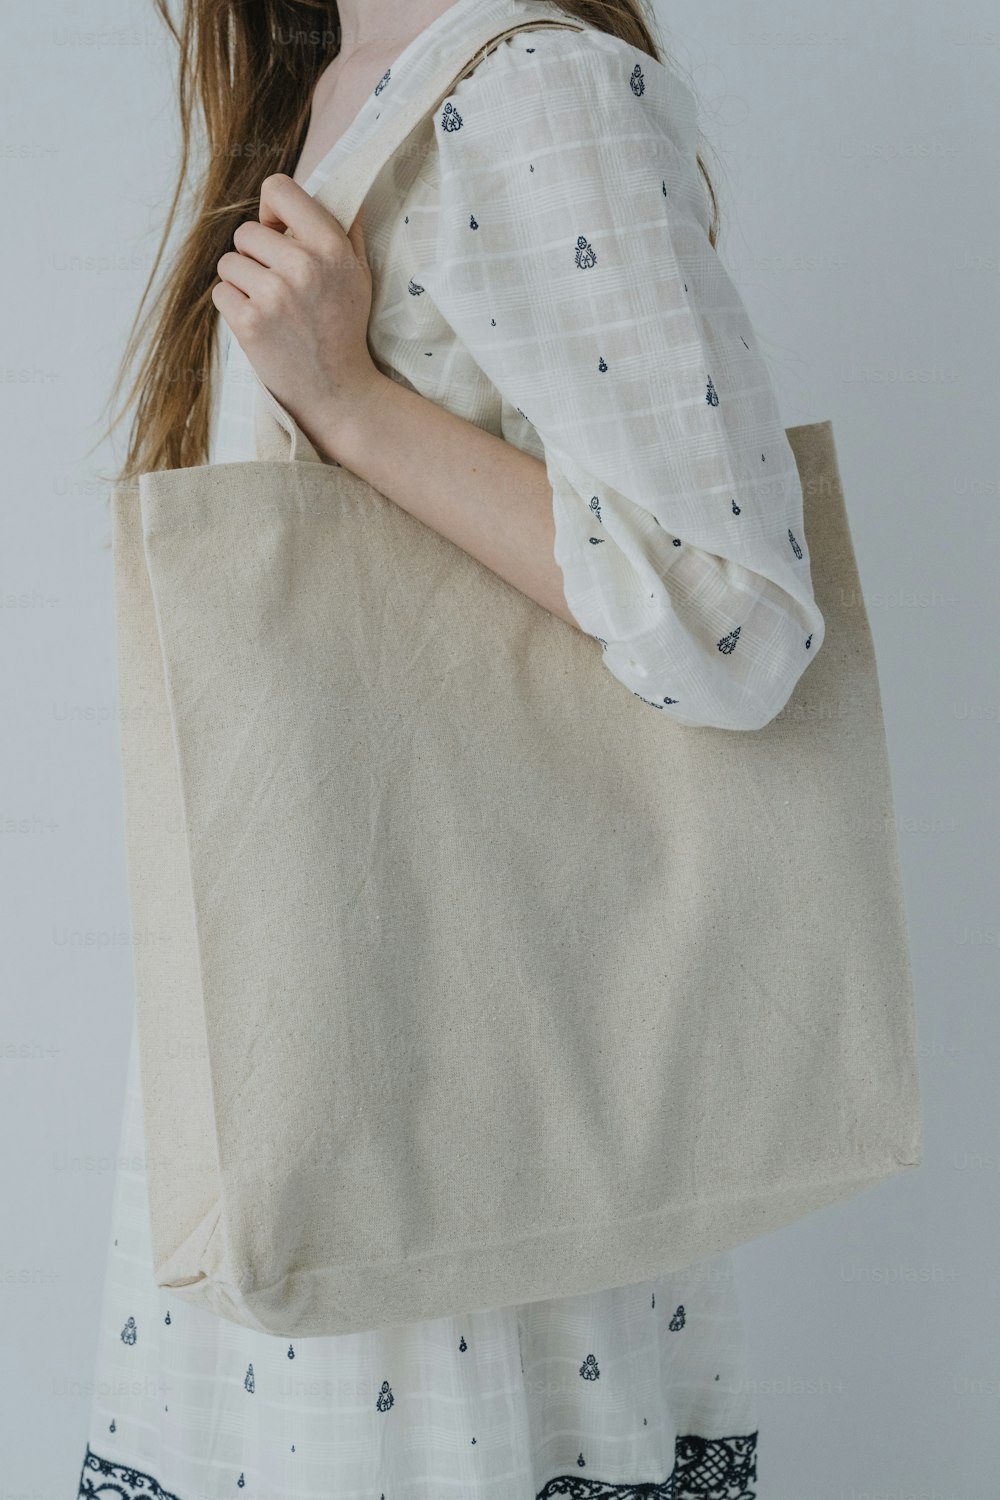 uma mulher está segurando um saco grande em suas mãos